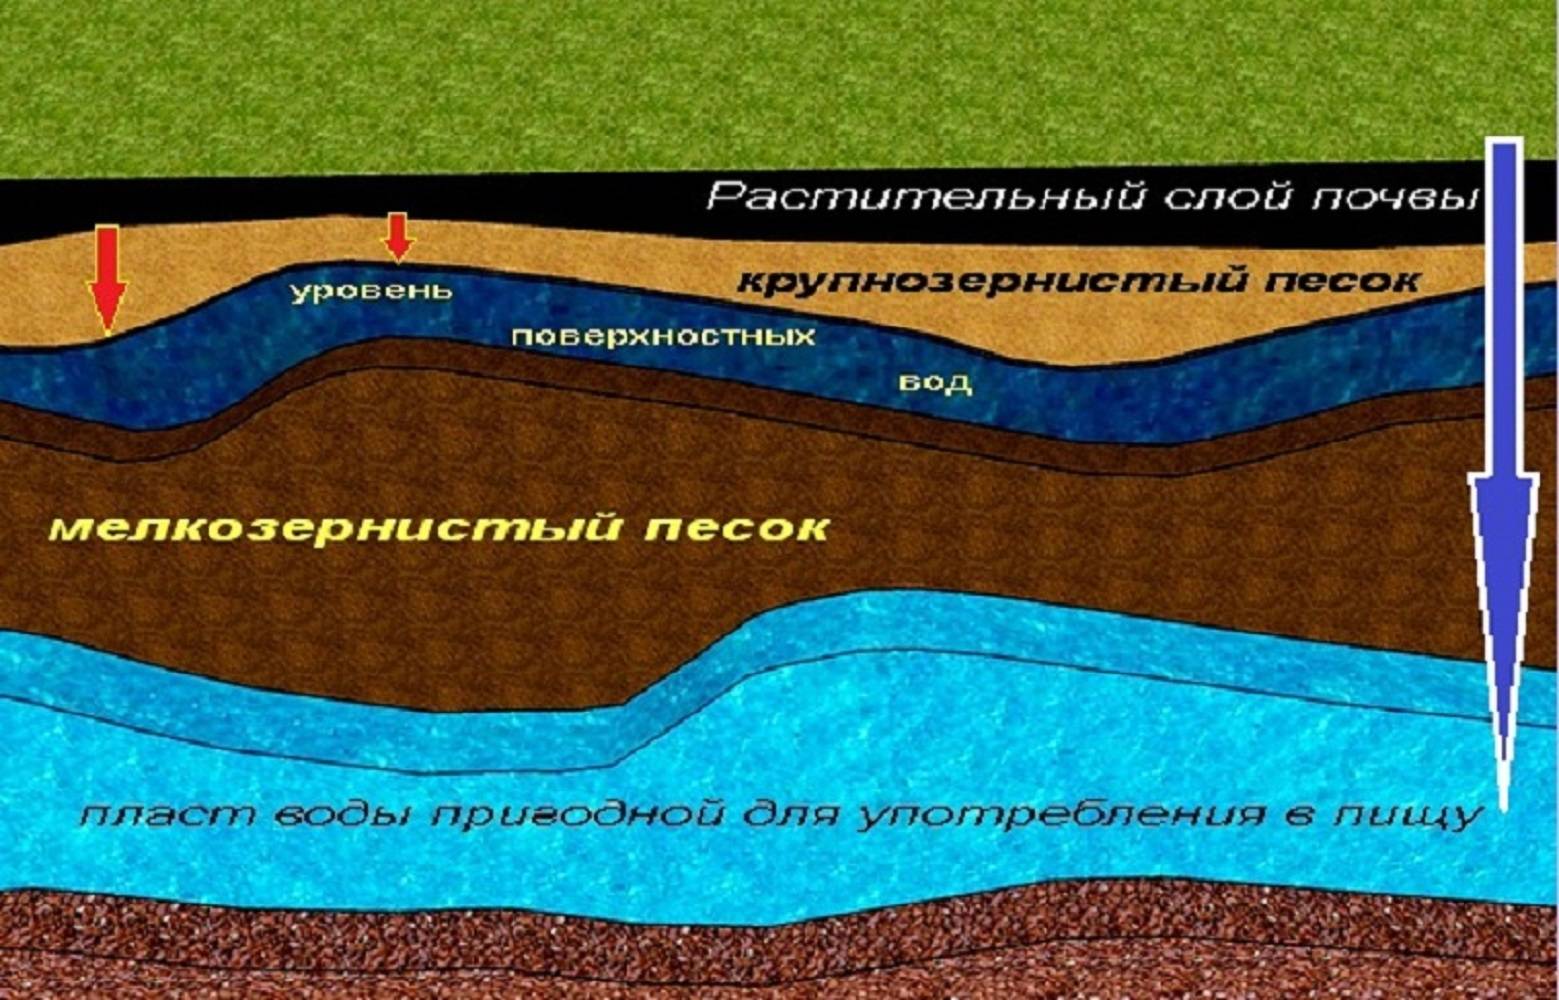 Как найти воду на участке для скважины: определить для колодца, поиск водоносного слоя в почве, на какой глубине находится питьевая, видео